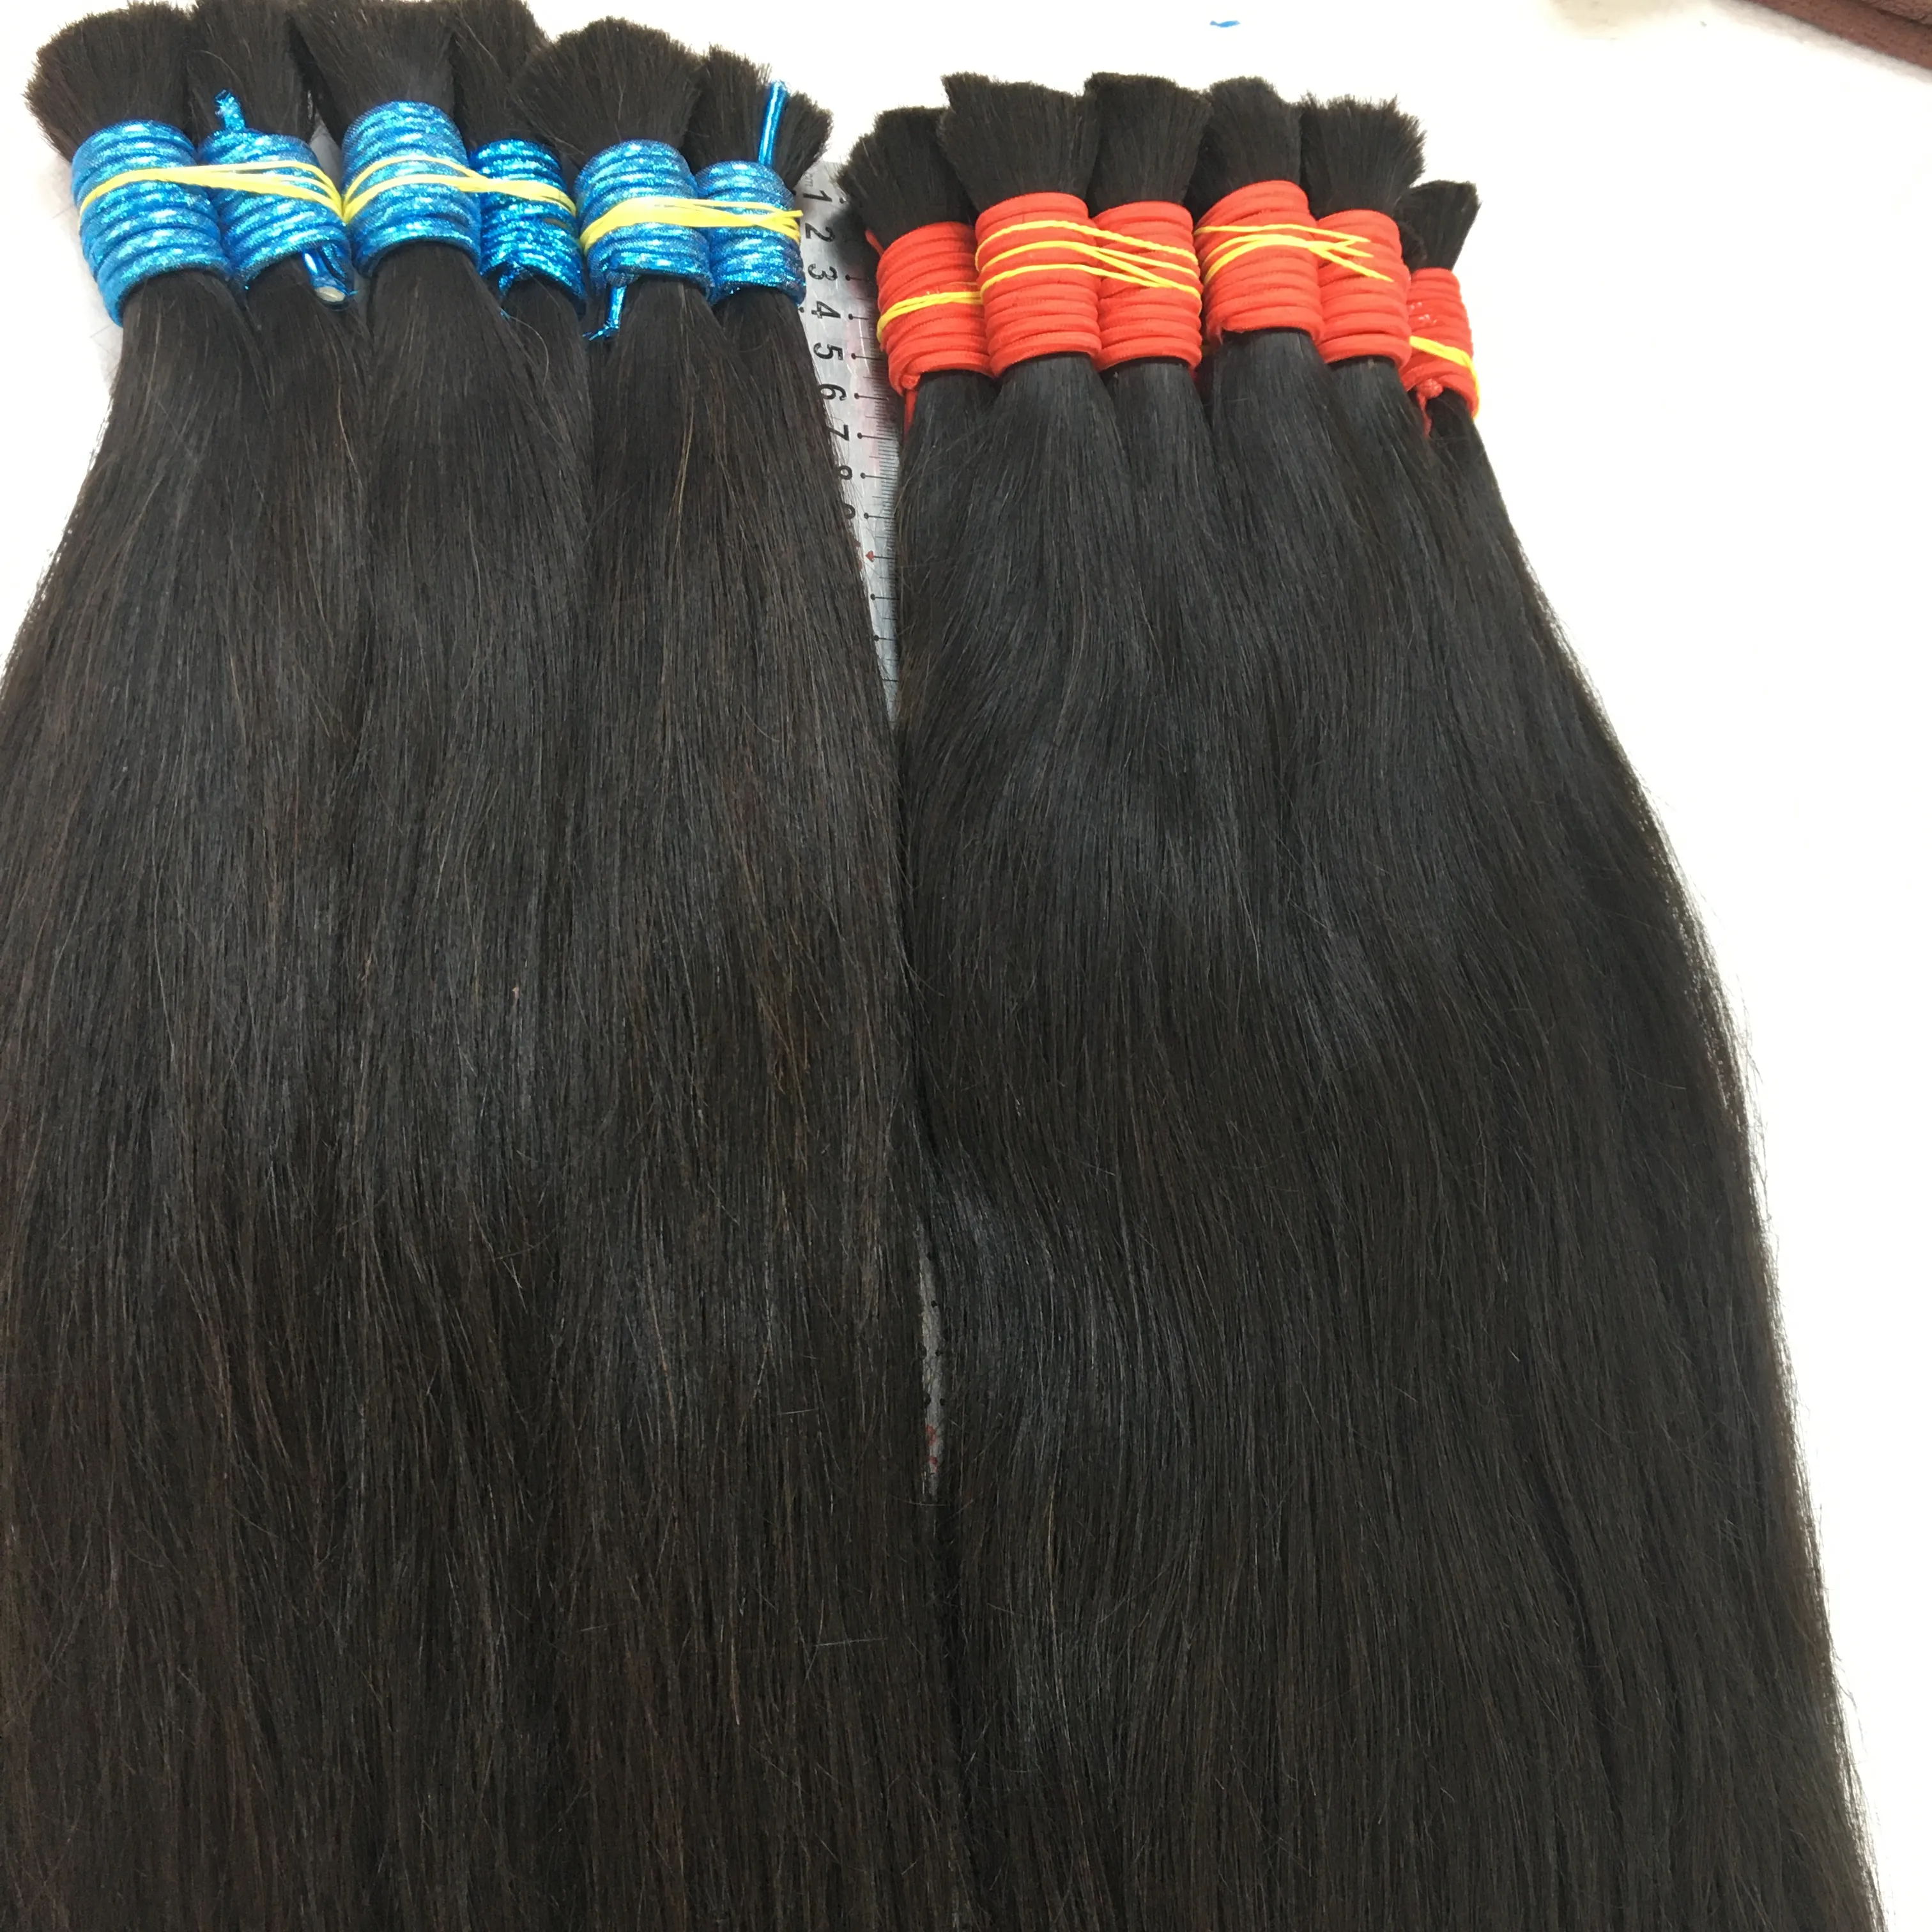 Extensão de cabelo humano, frete grátis para cabelo traurado cabelo humano preço atacado 100% natural cabelo cru 10a granel